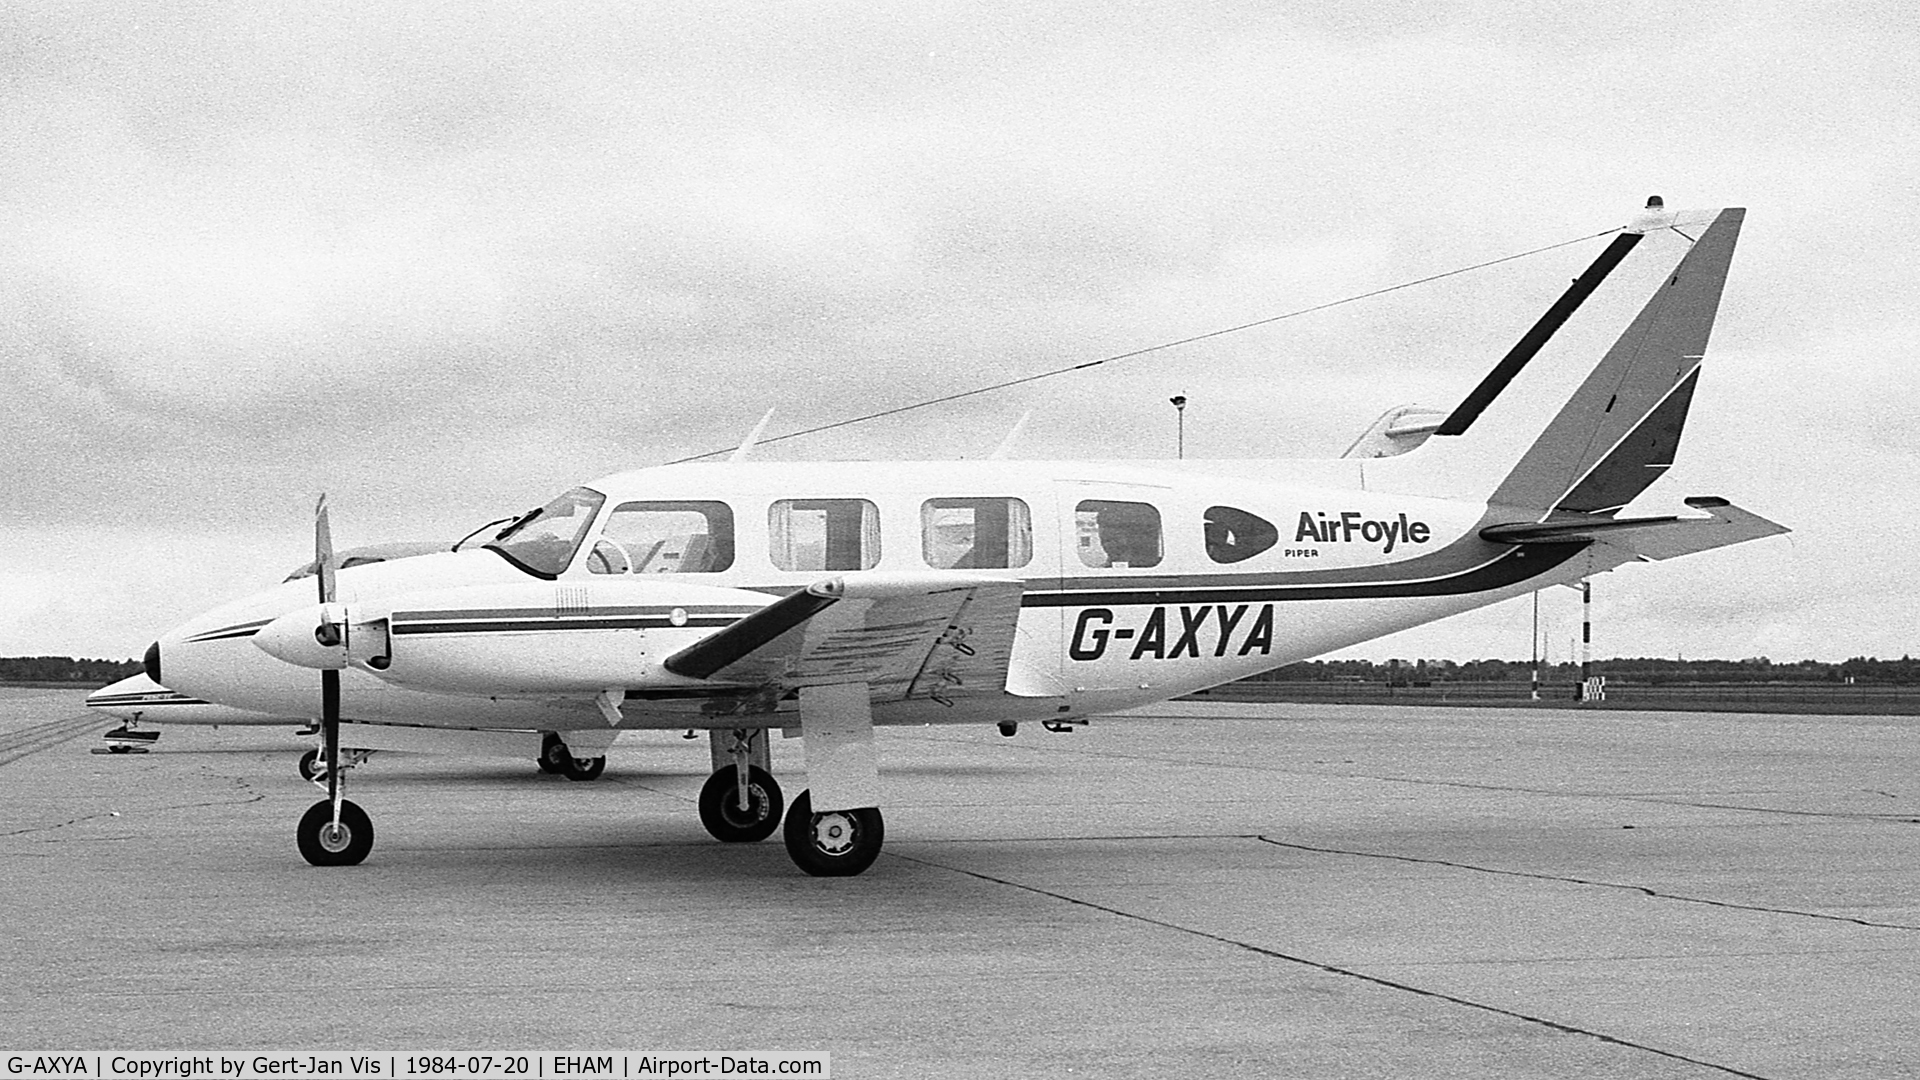 G-AXYA, 1970 Piper PA-31-310 Navajo C/N 31-632, Air Foyle, at AMS